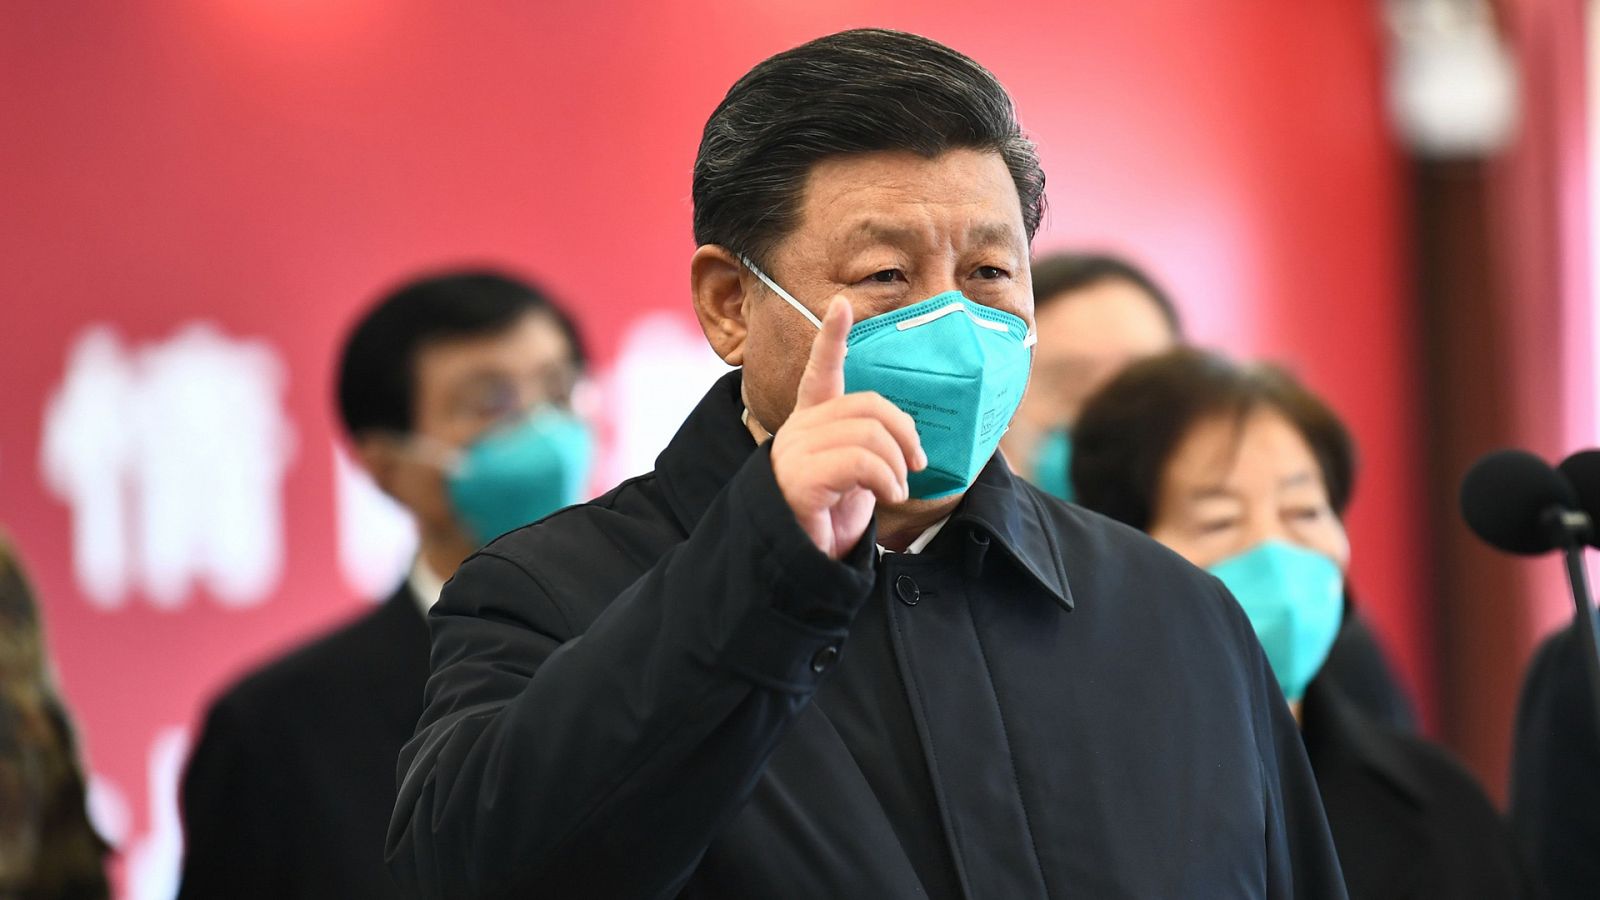 El presidente de China, Xi Jinping, visita la zona cero del coronavirus - RTVE.es